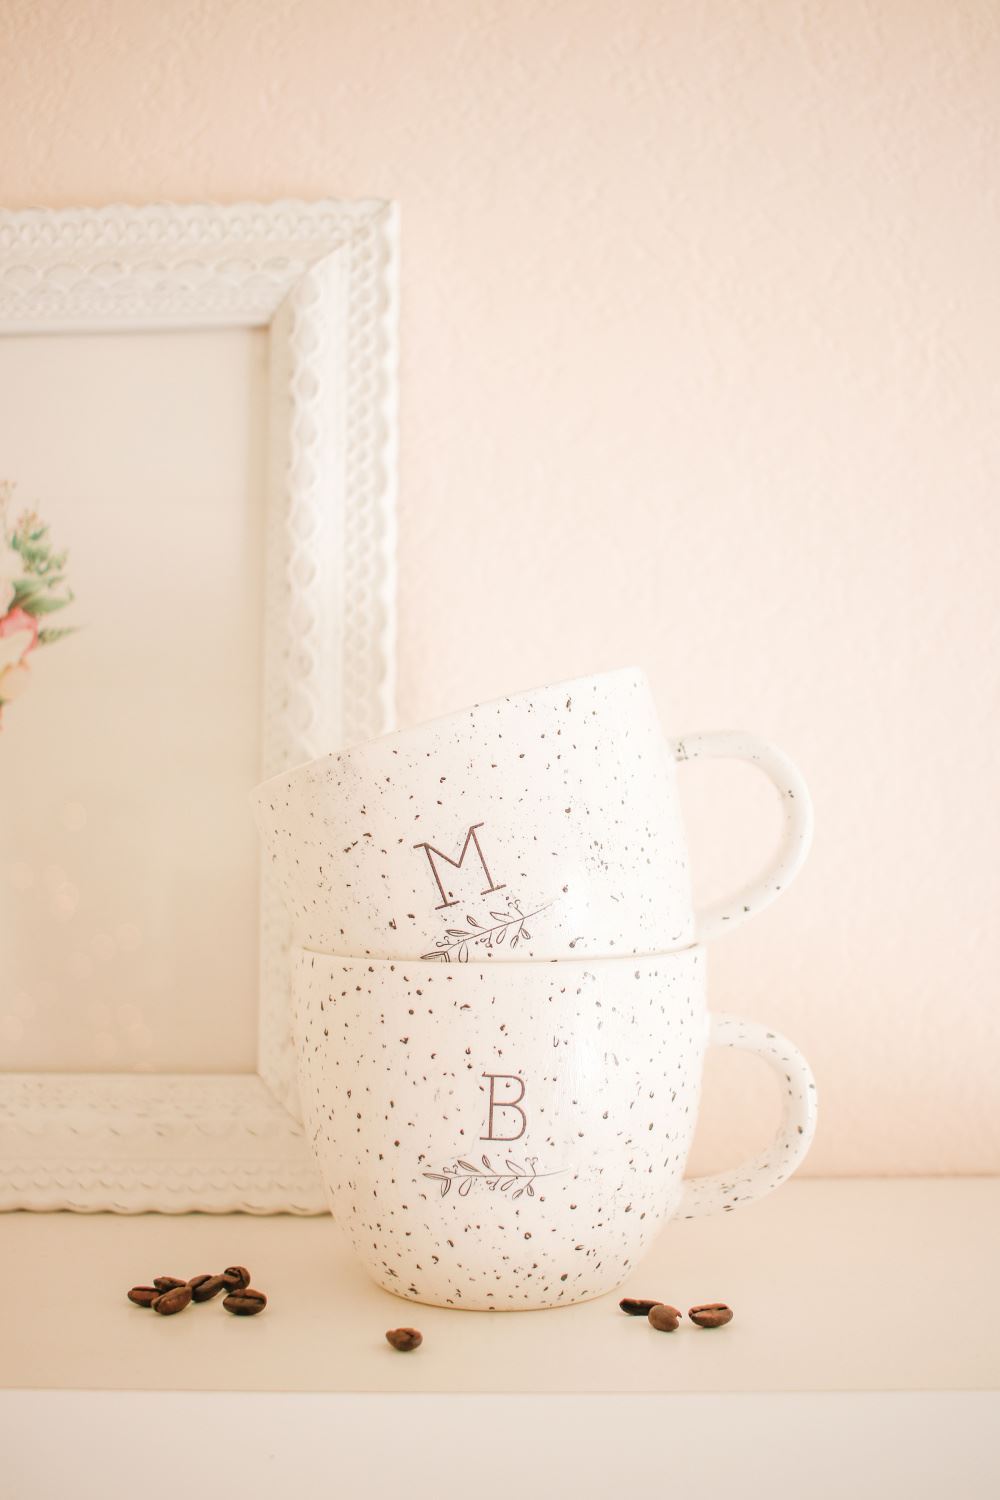 How to Decoupage a Ceramic Mug